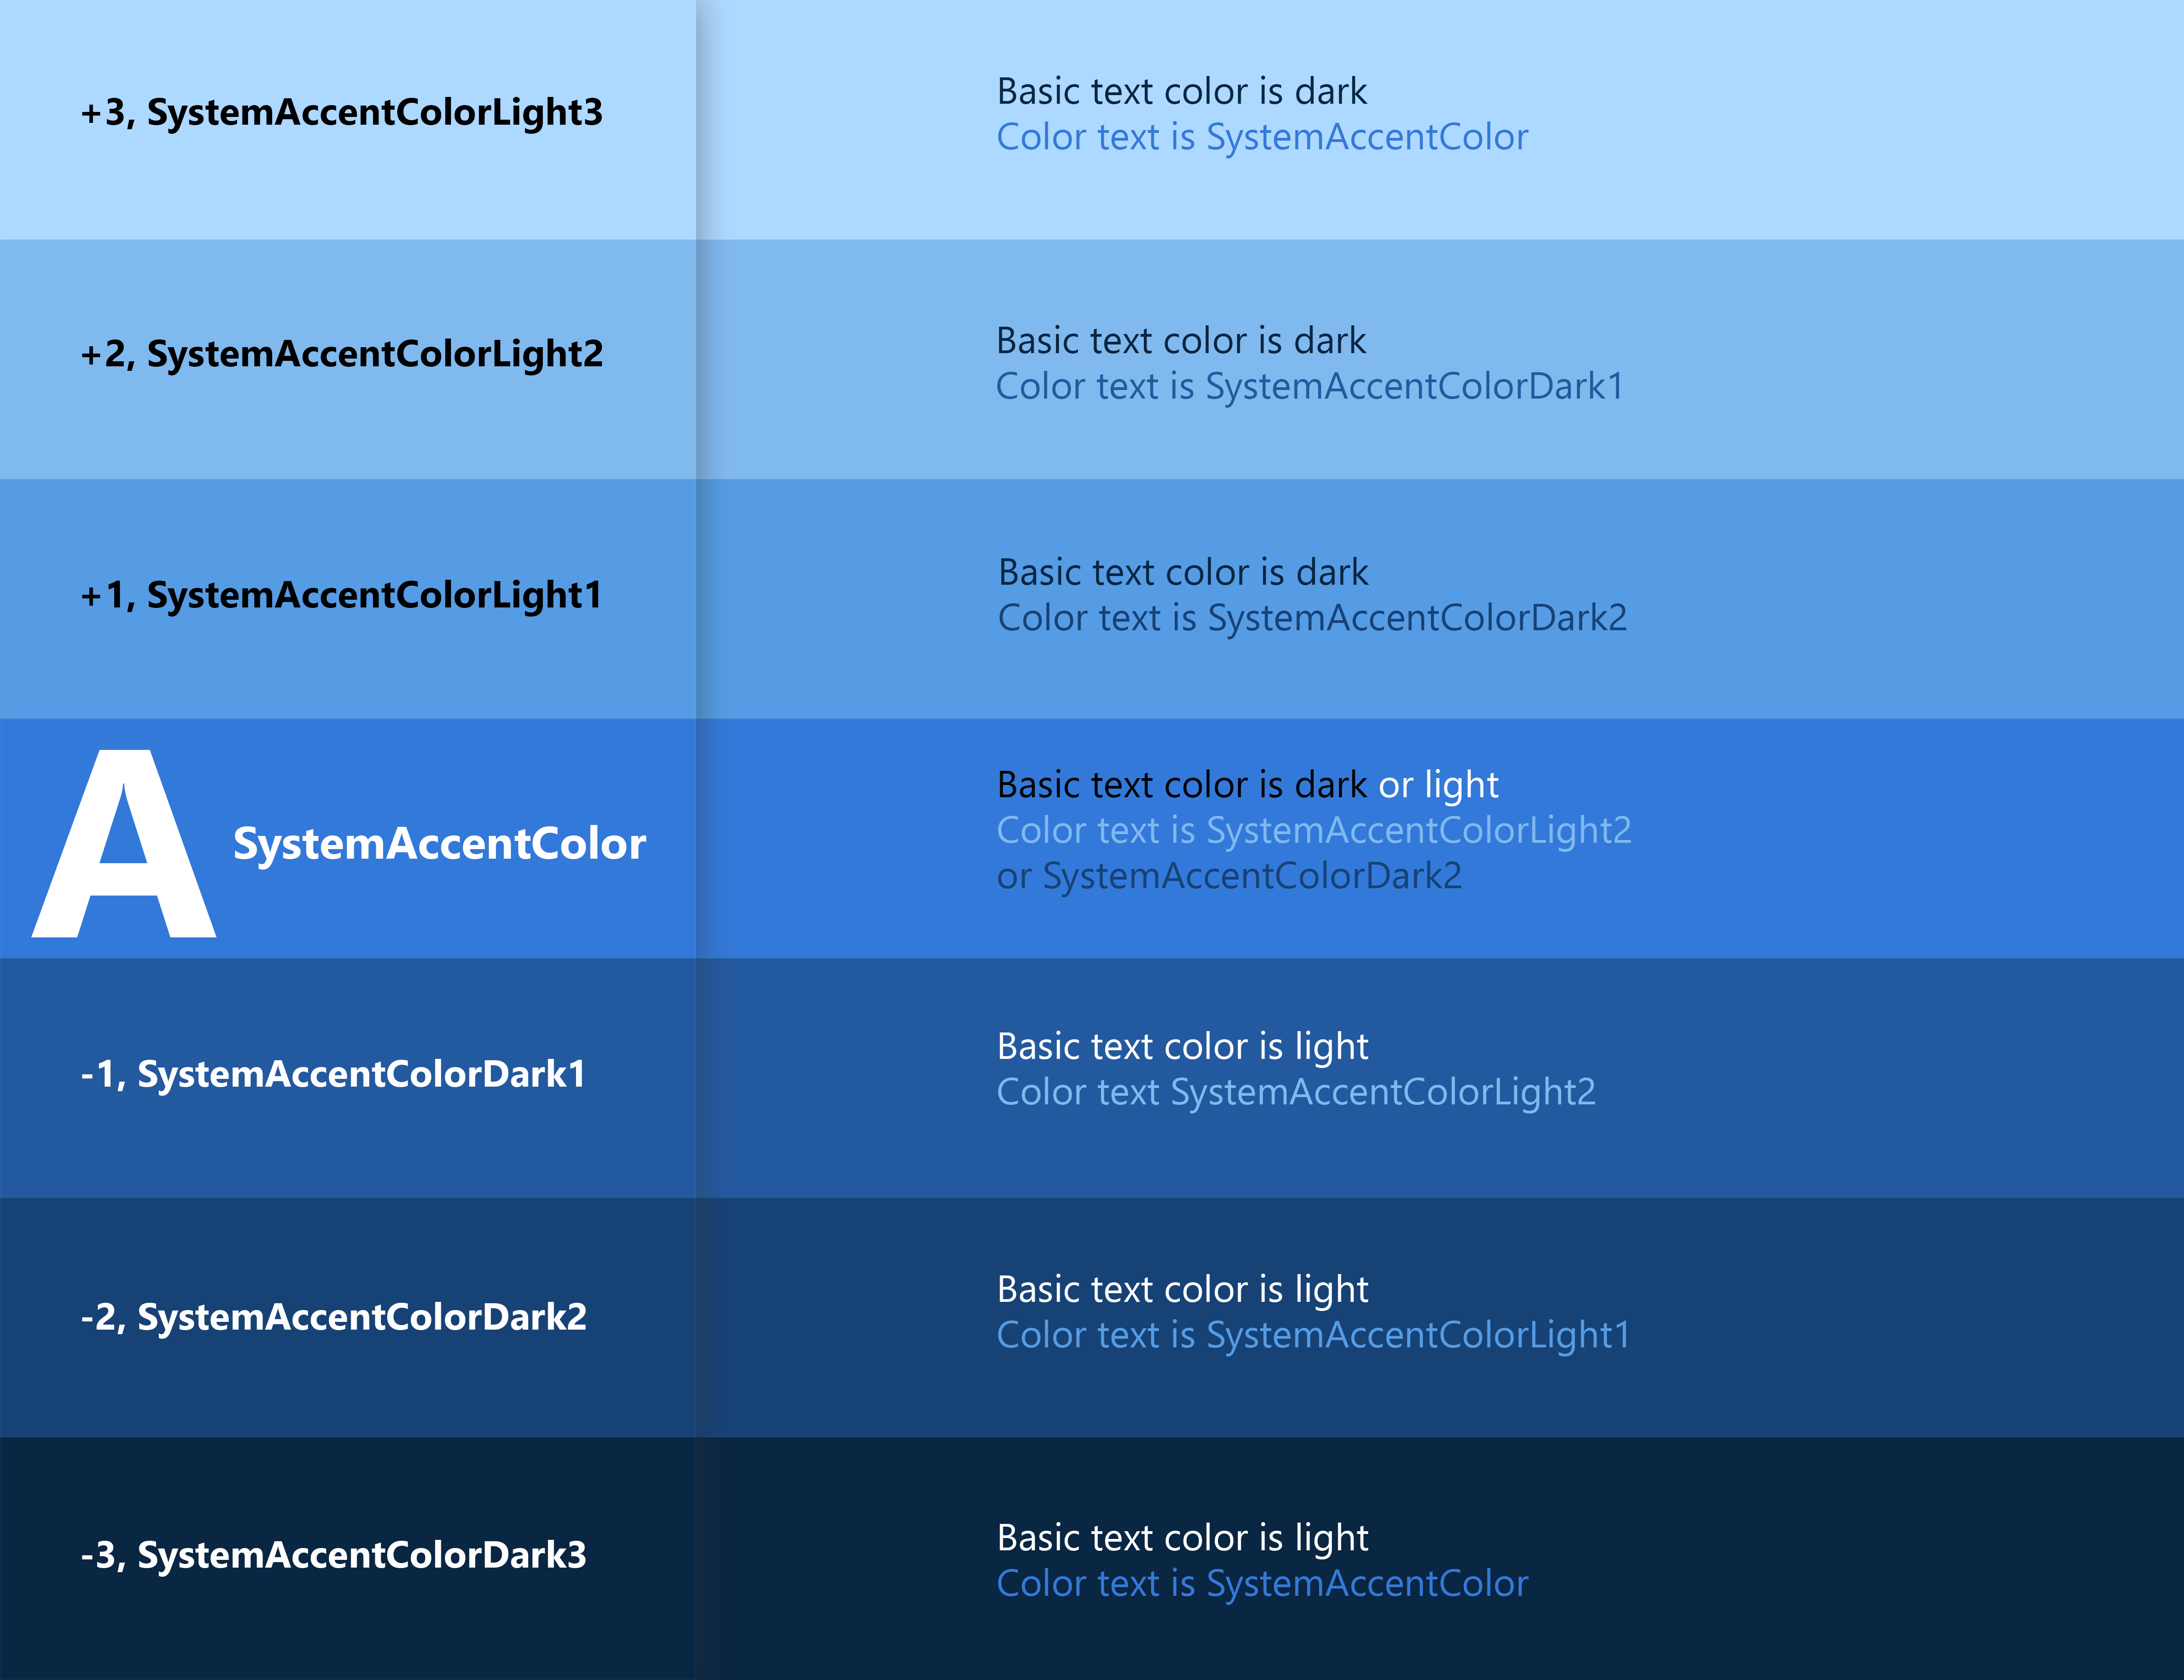 Captura de pantalla del gráfico Color sobre color que muestra un degradado de color del celeste arriba hasta el azul oscuro abajo.